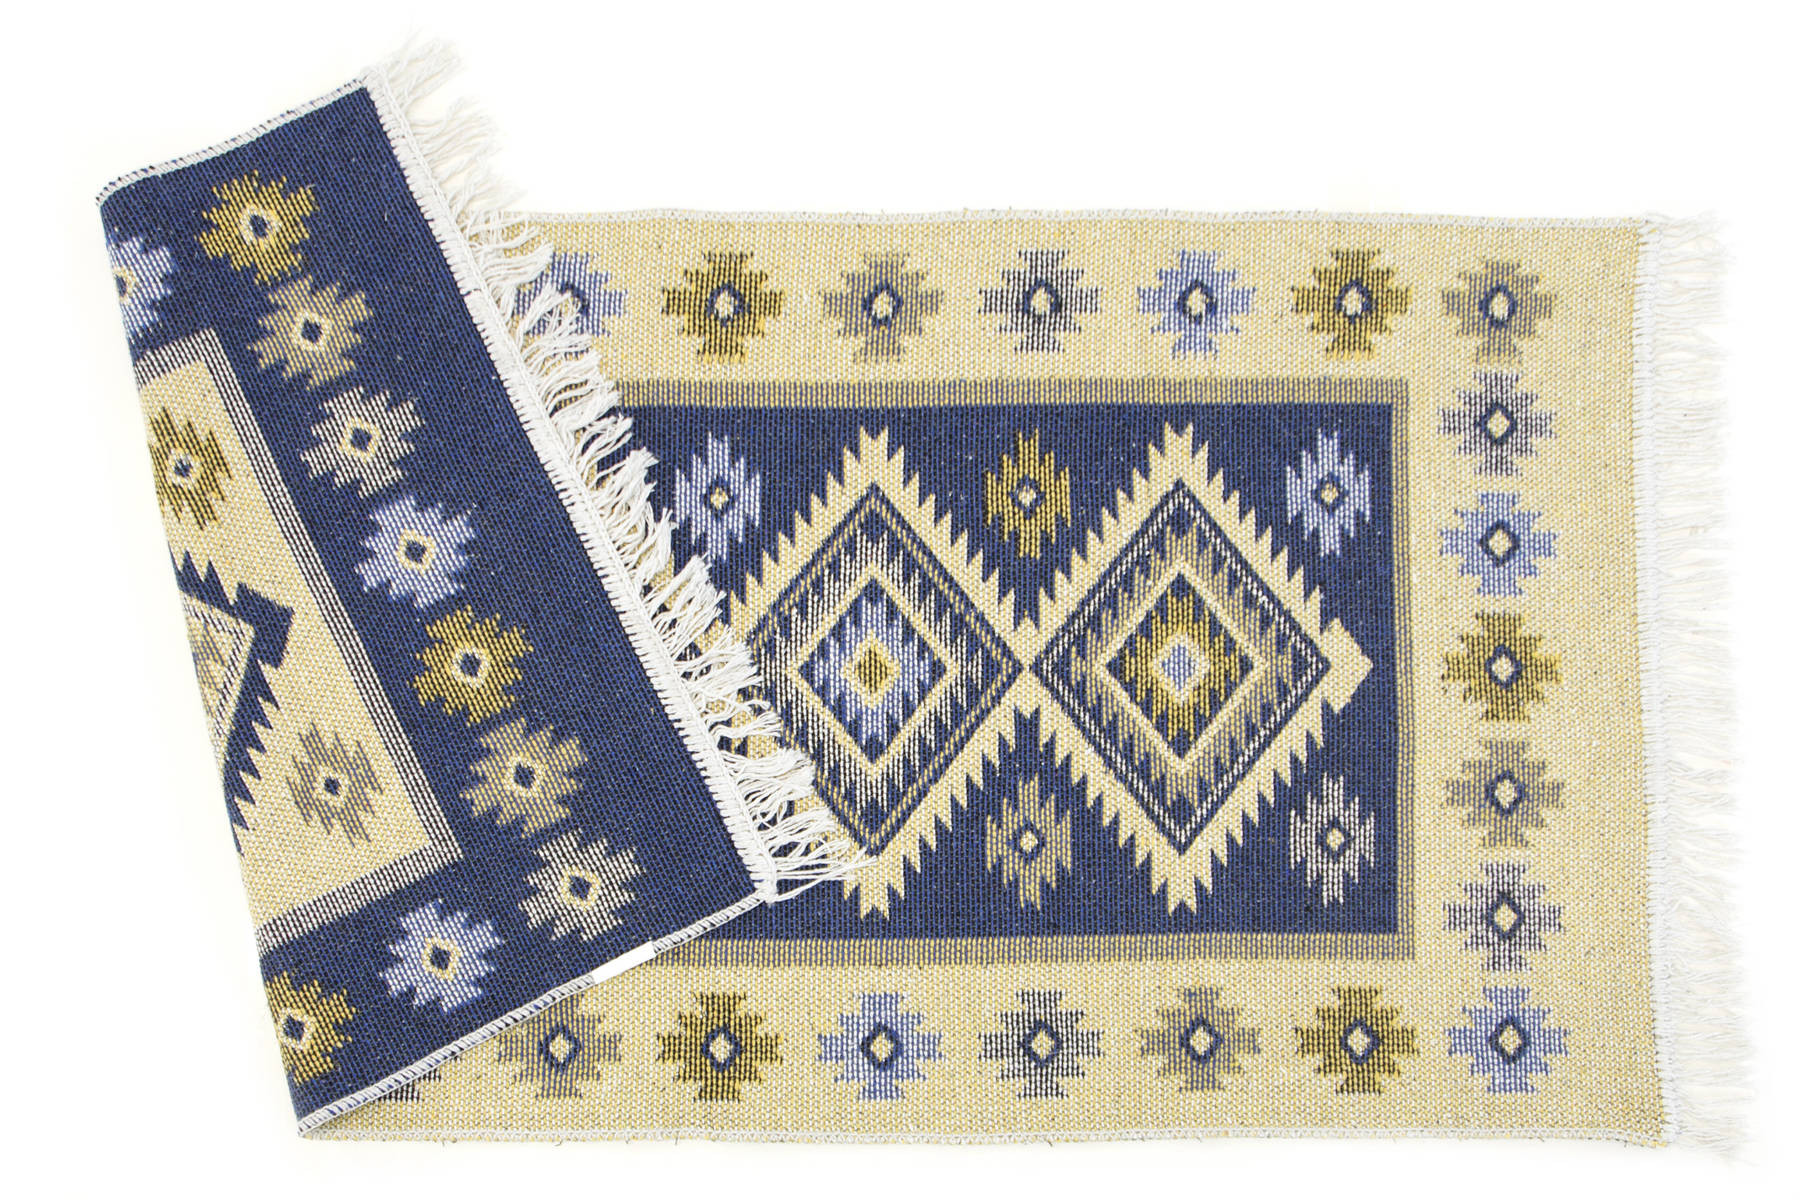 Obojstranný koberec / behúň Kilim Romby modrý